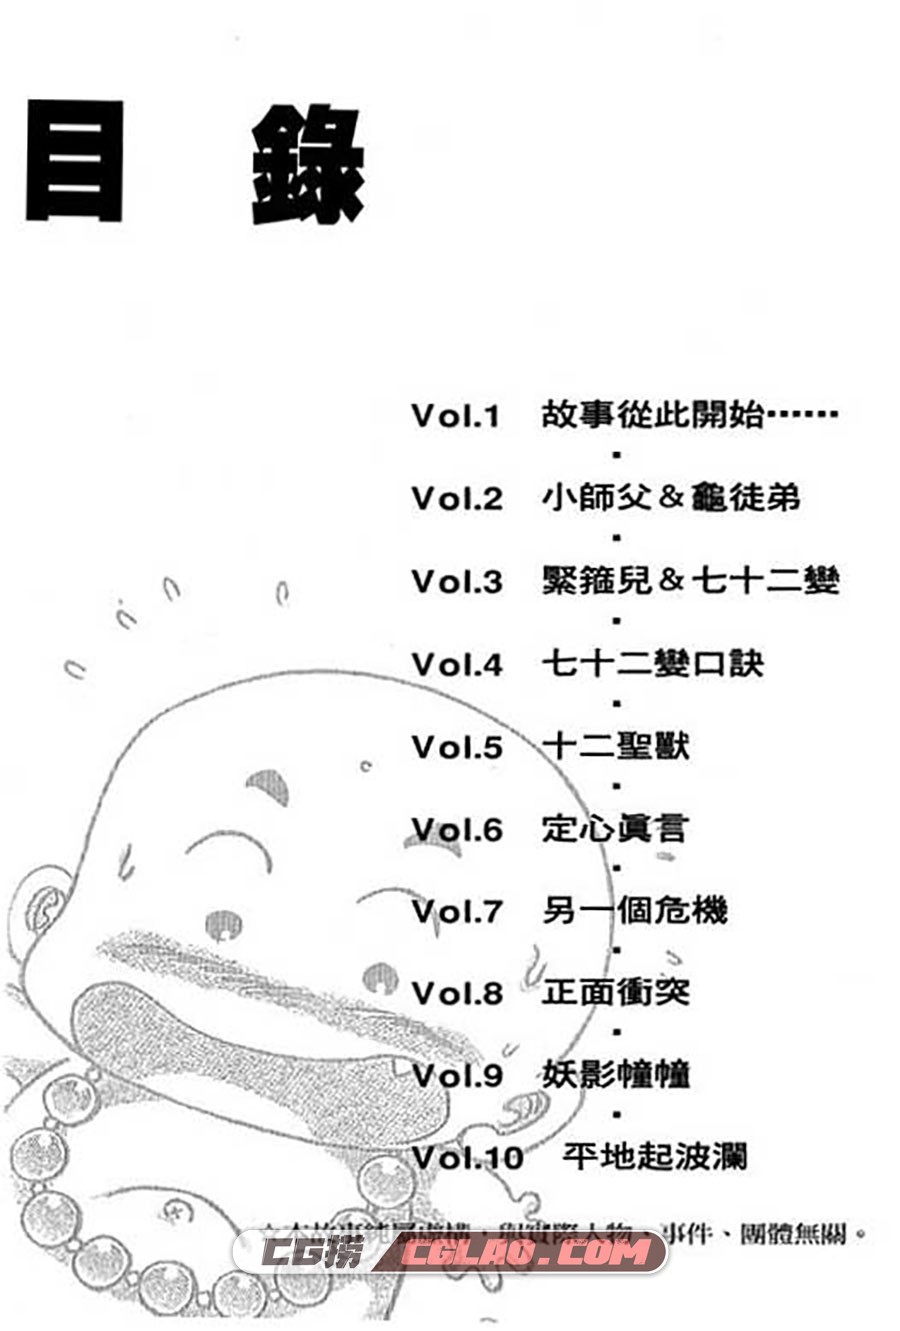 小和尚 赖有贤 1-28册 漫画全集下载 百度网盘,001_002.jpg